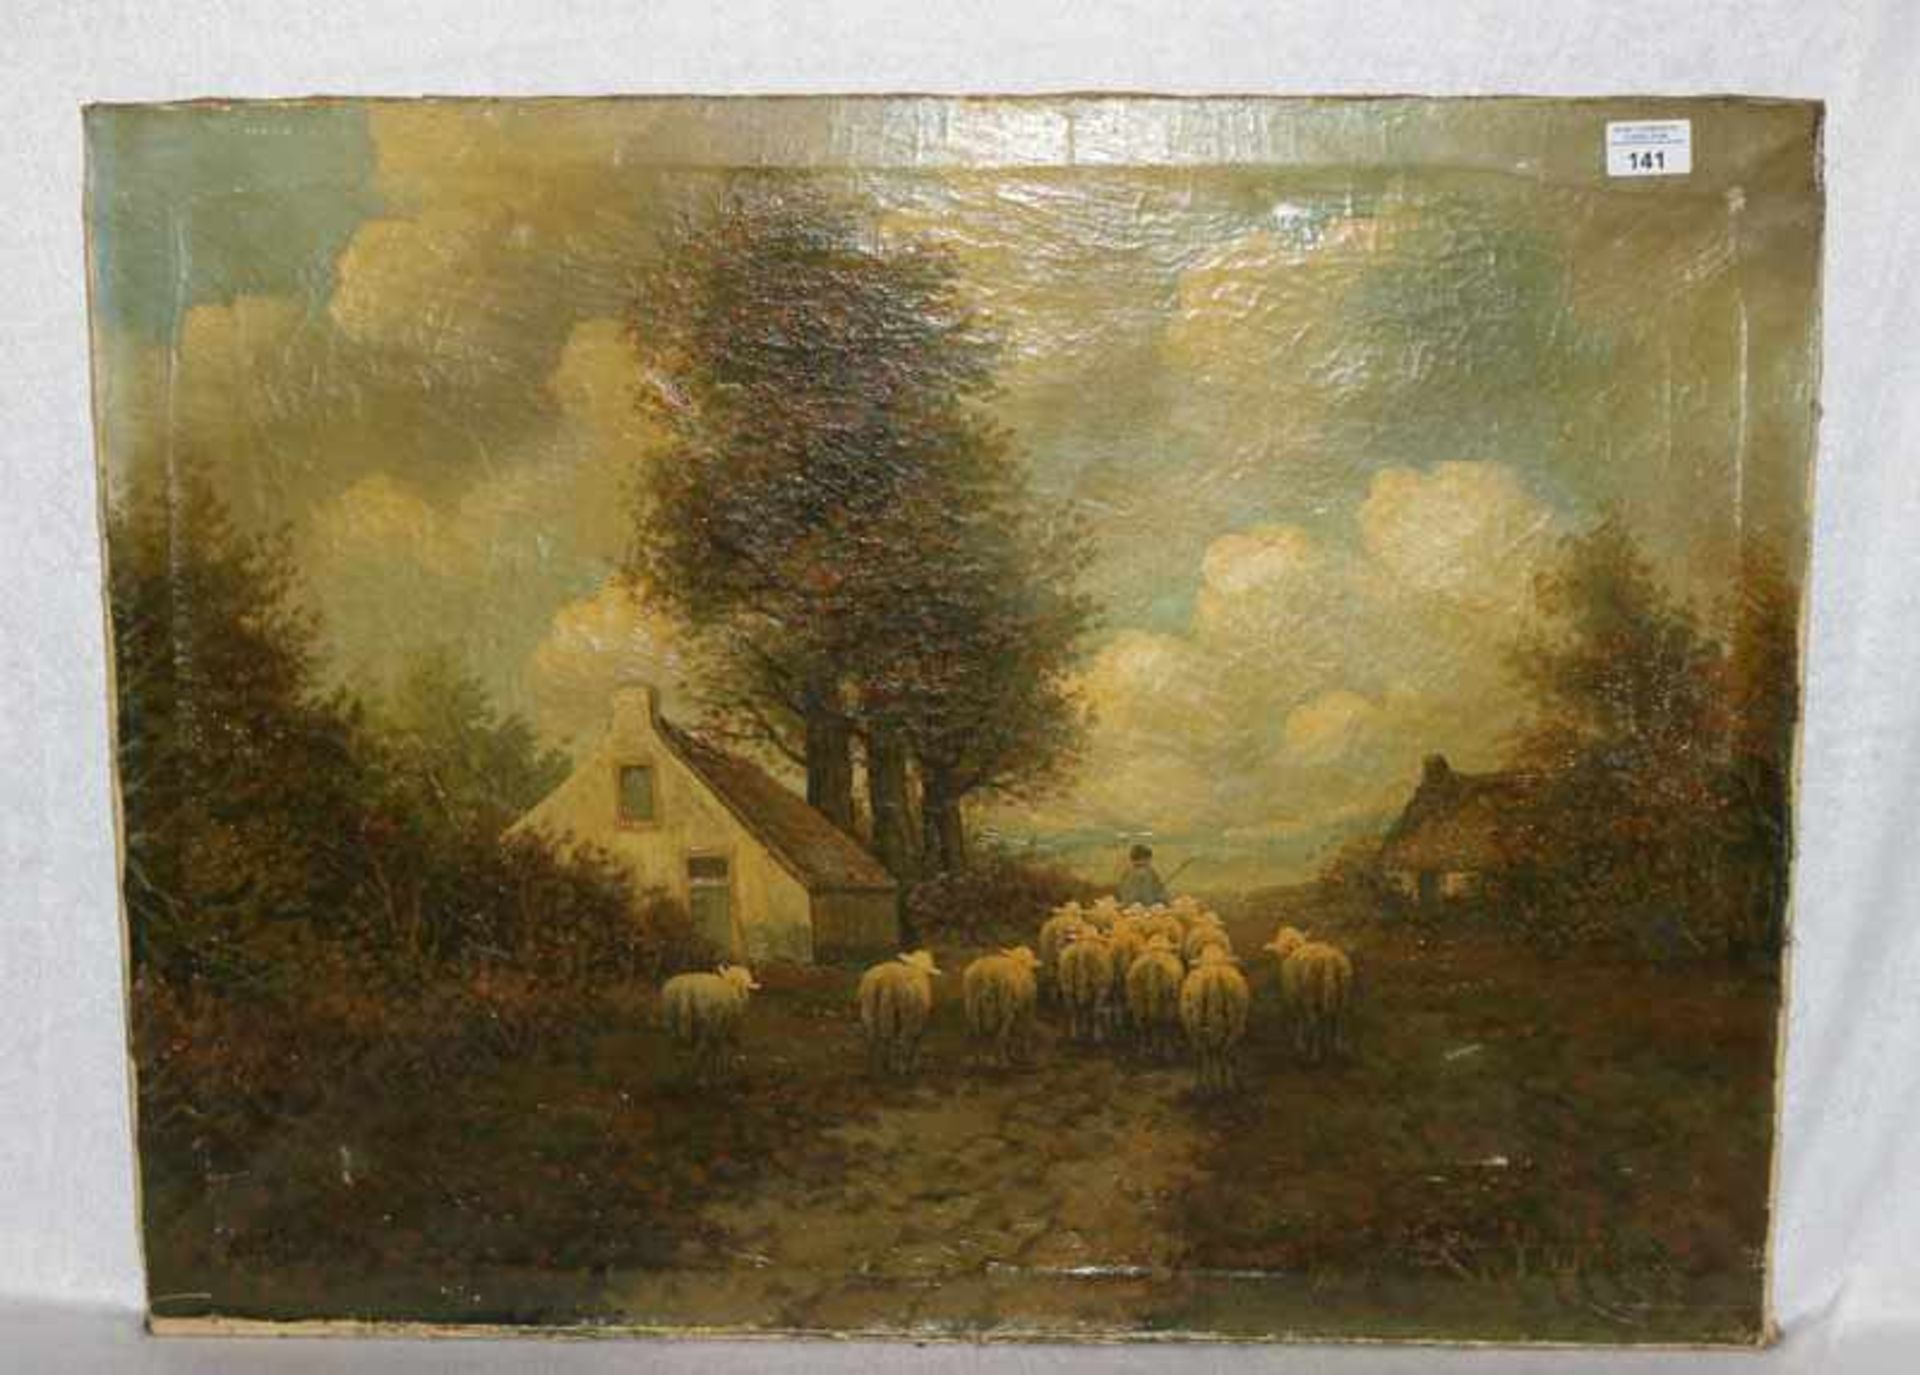 Gemälde ÖL/LW 'Schäfer mit Schafherde', undeutlich signiert, LW geschädigt, ohne Rahmen, 60 cm x